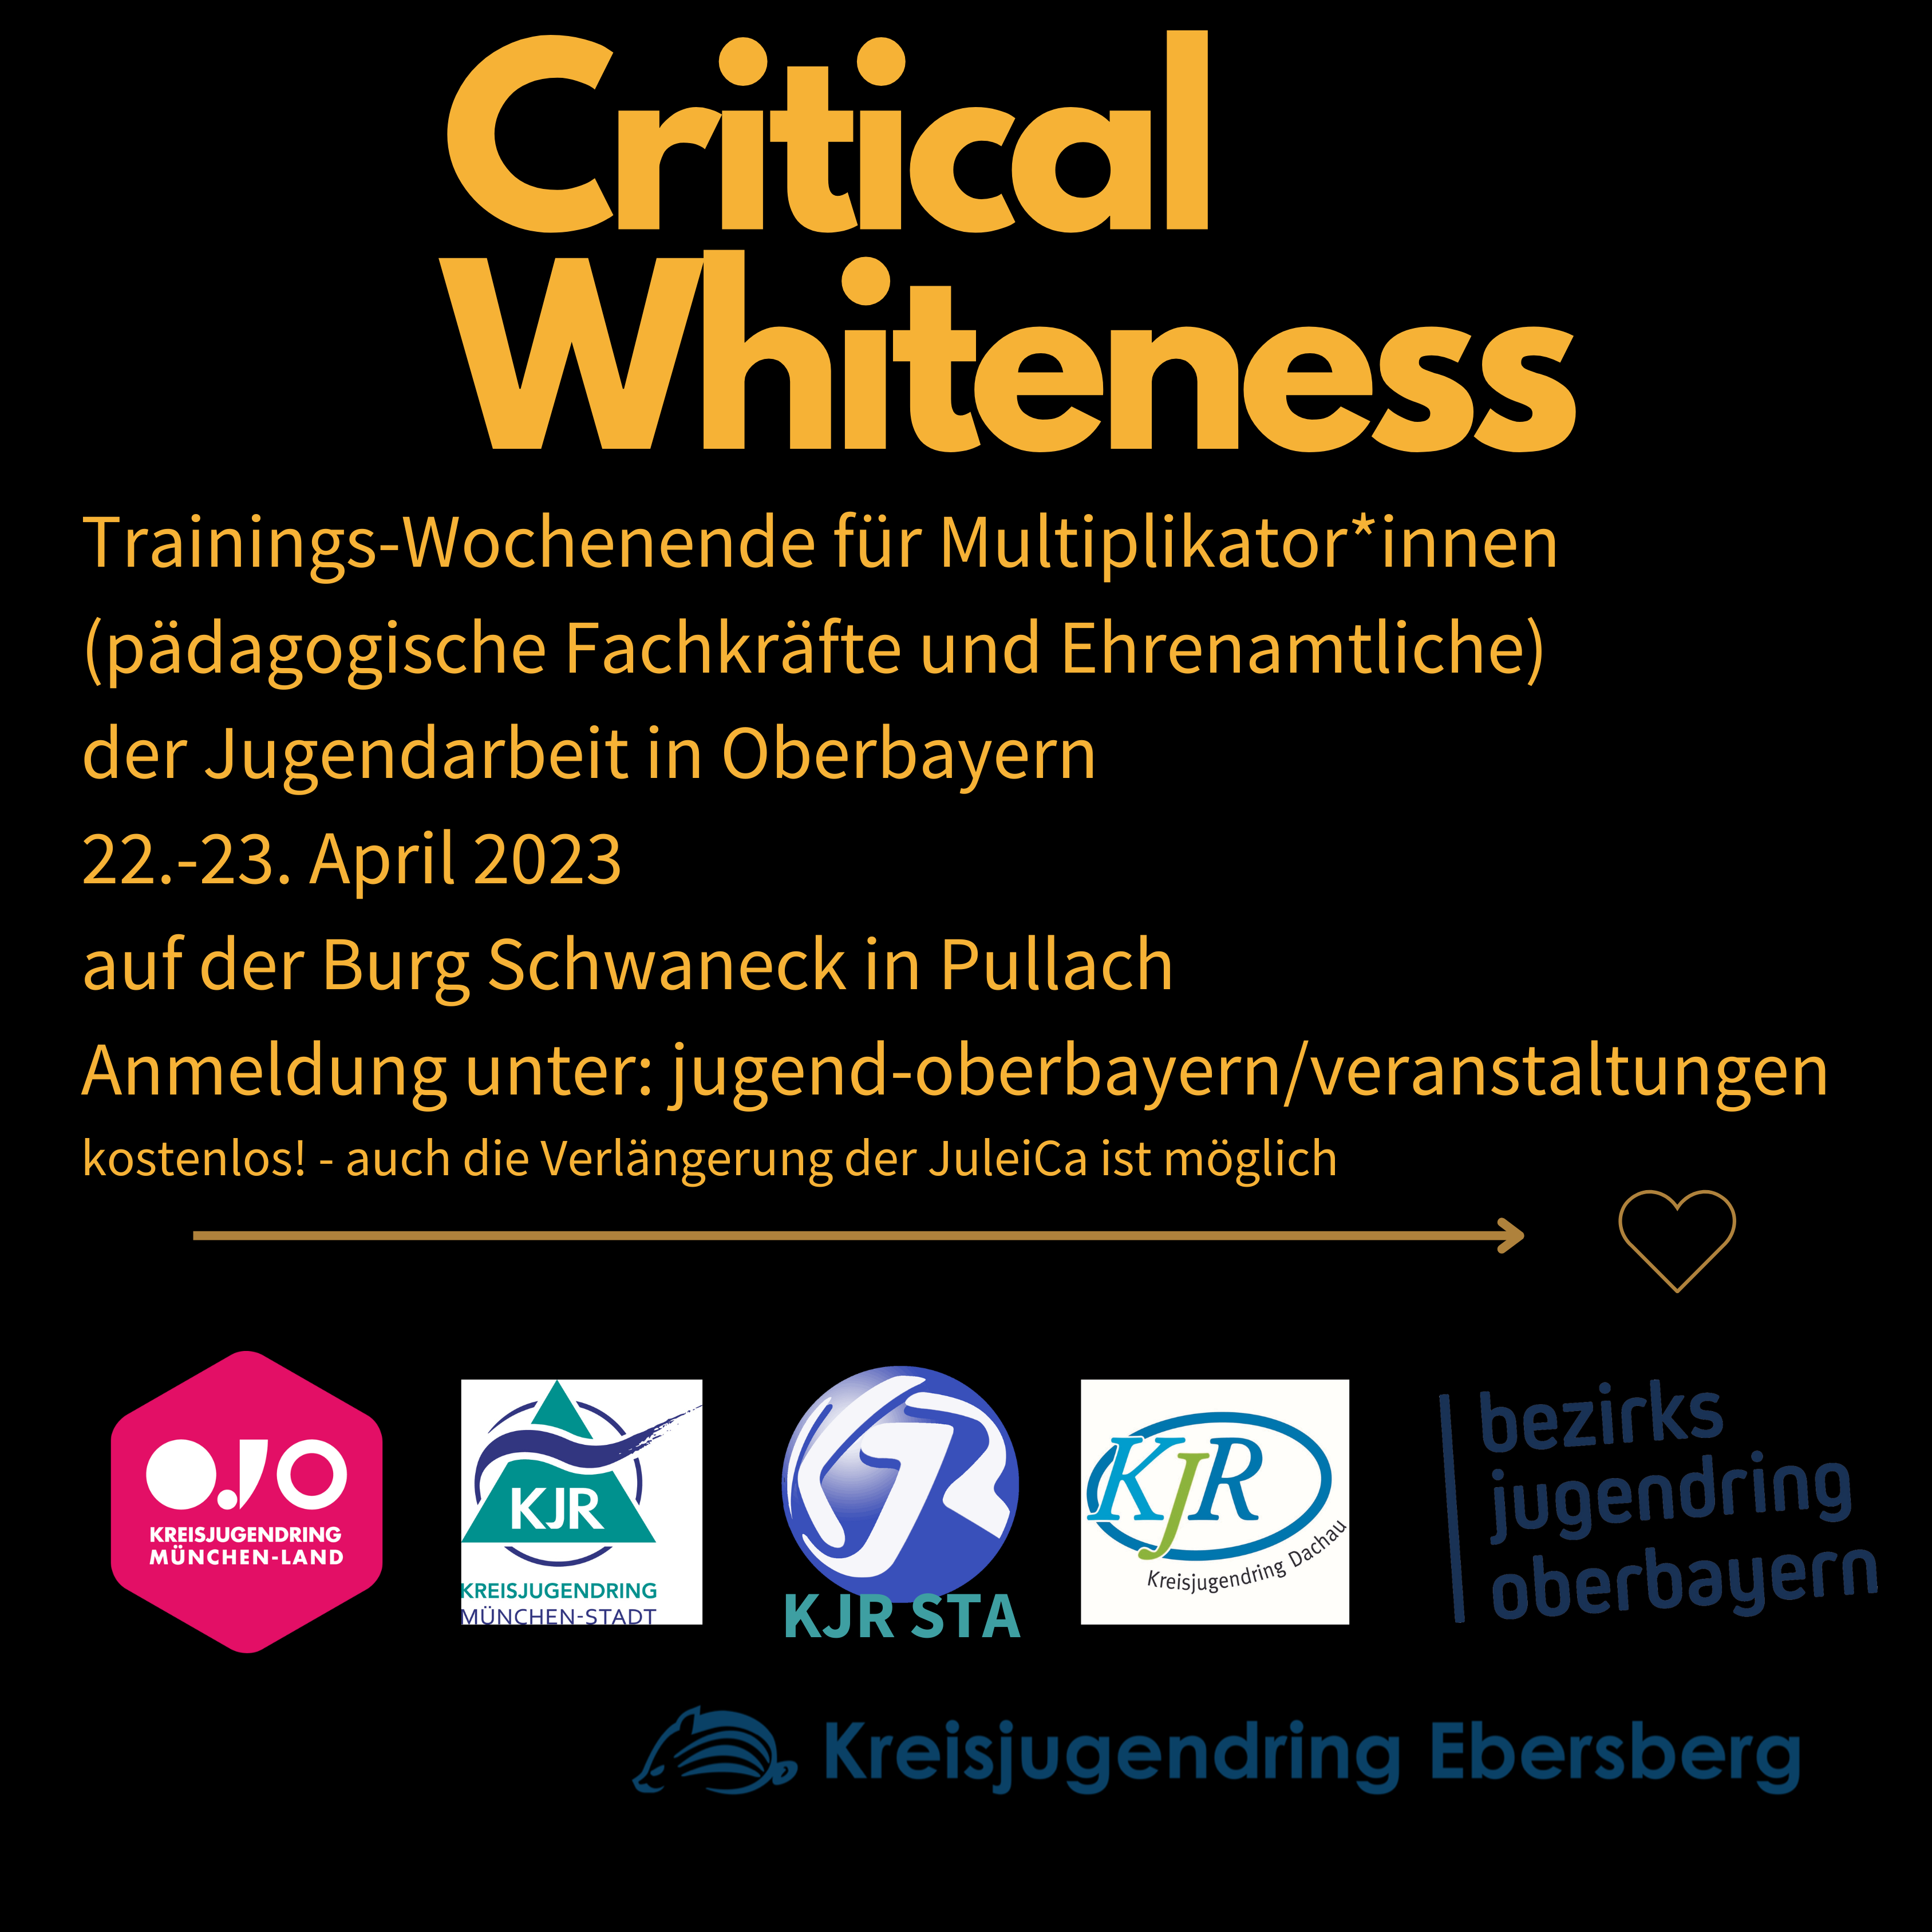 Critical Whiteness, Trainingswochenende für Multiplikator*innen der Jugendarbeit in Oberbayern, 22.-23. April 2023 auf der Burg Schwaneck in Pullach, kostenlos, auch die Verlängerung der JuleiCa ist möglich.